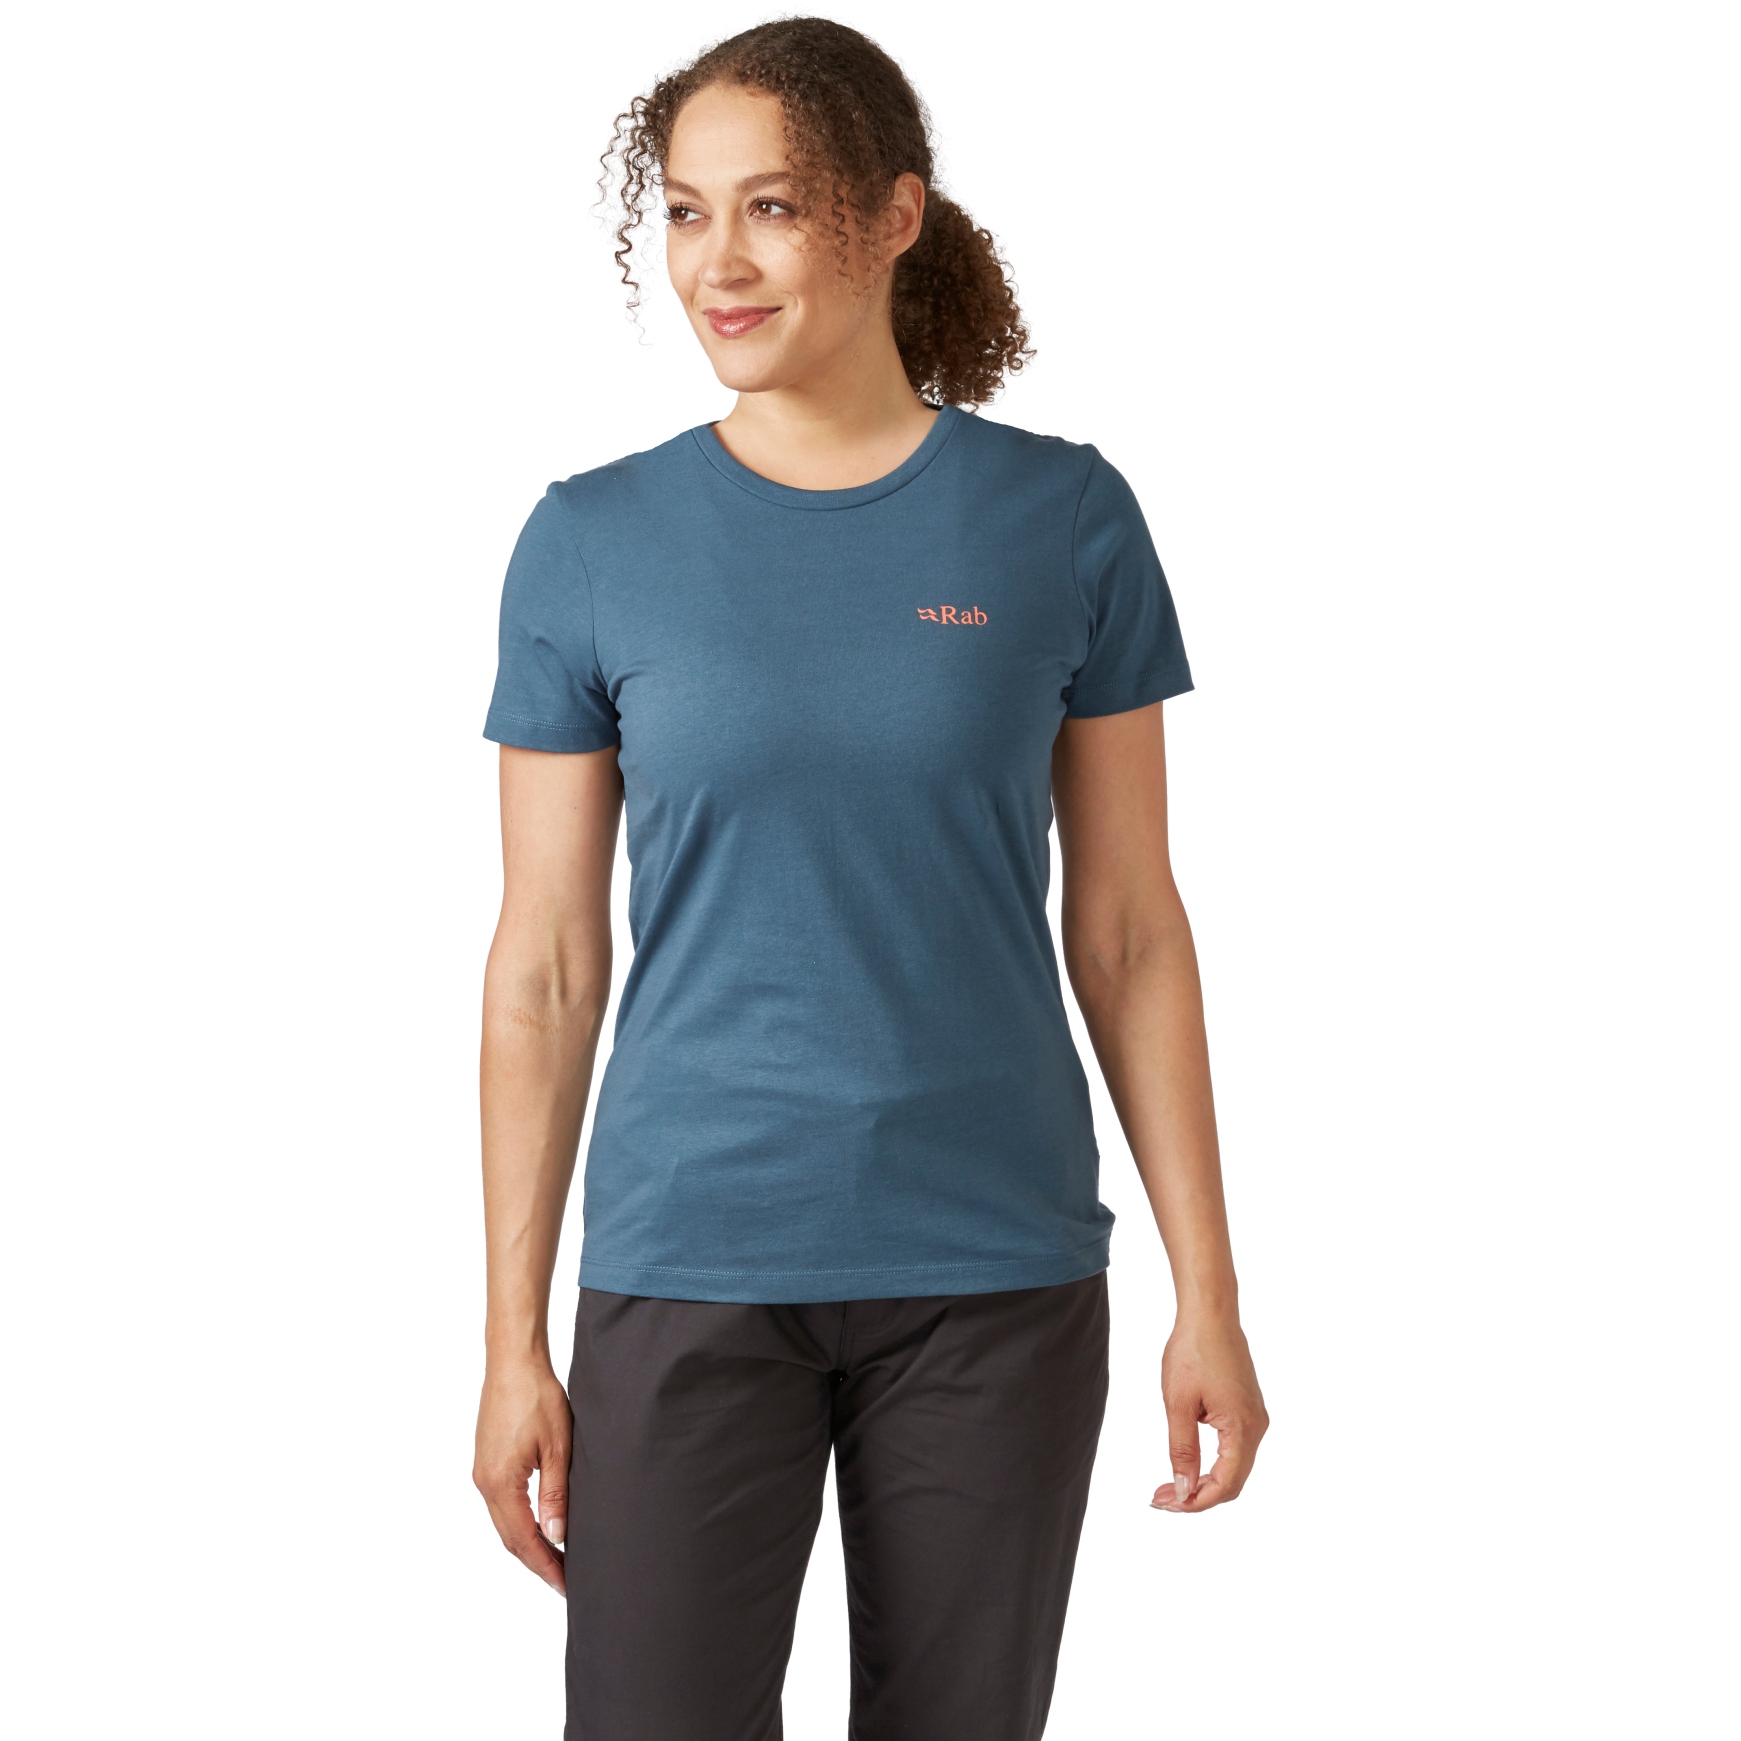 Produktbild von Rab Stance Cinder Damen T-Shirt - orion blue